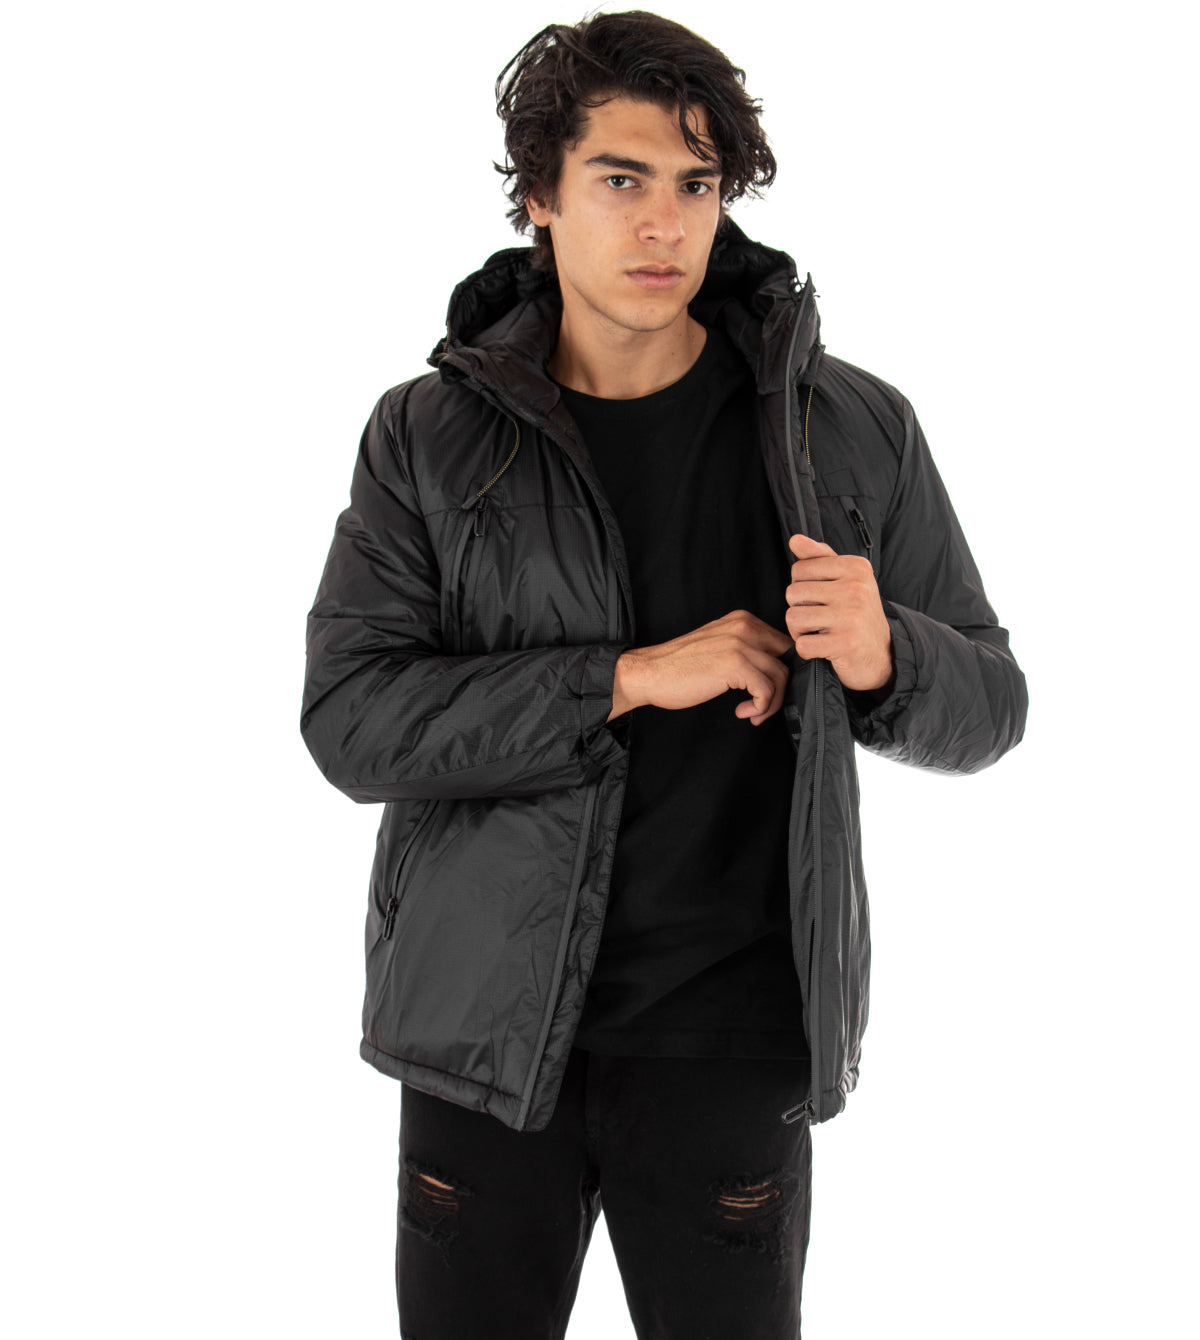 Men's Long Sleeves Solid Color Black Jacket Casual Hooded Zip Jacket GIOSAL